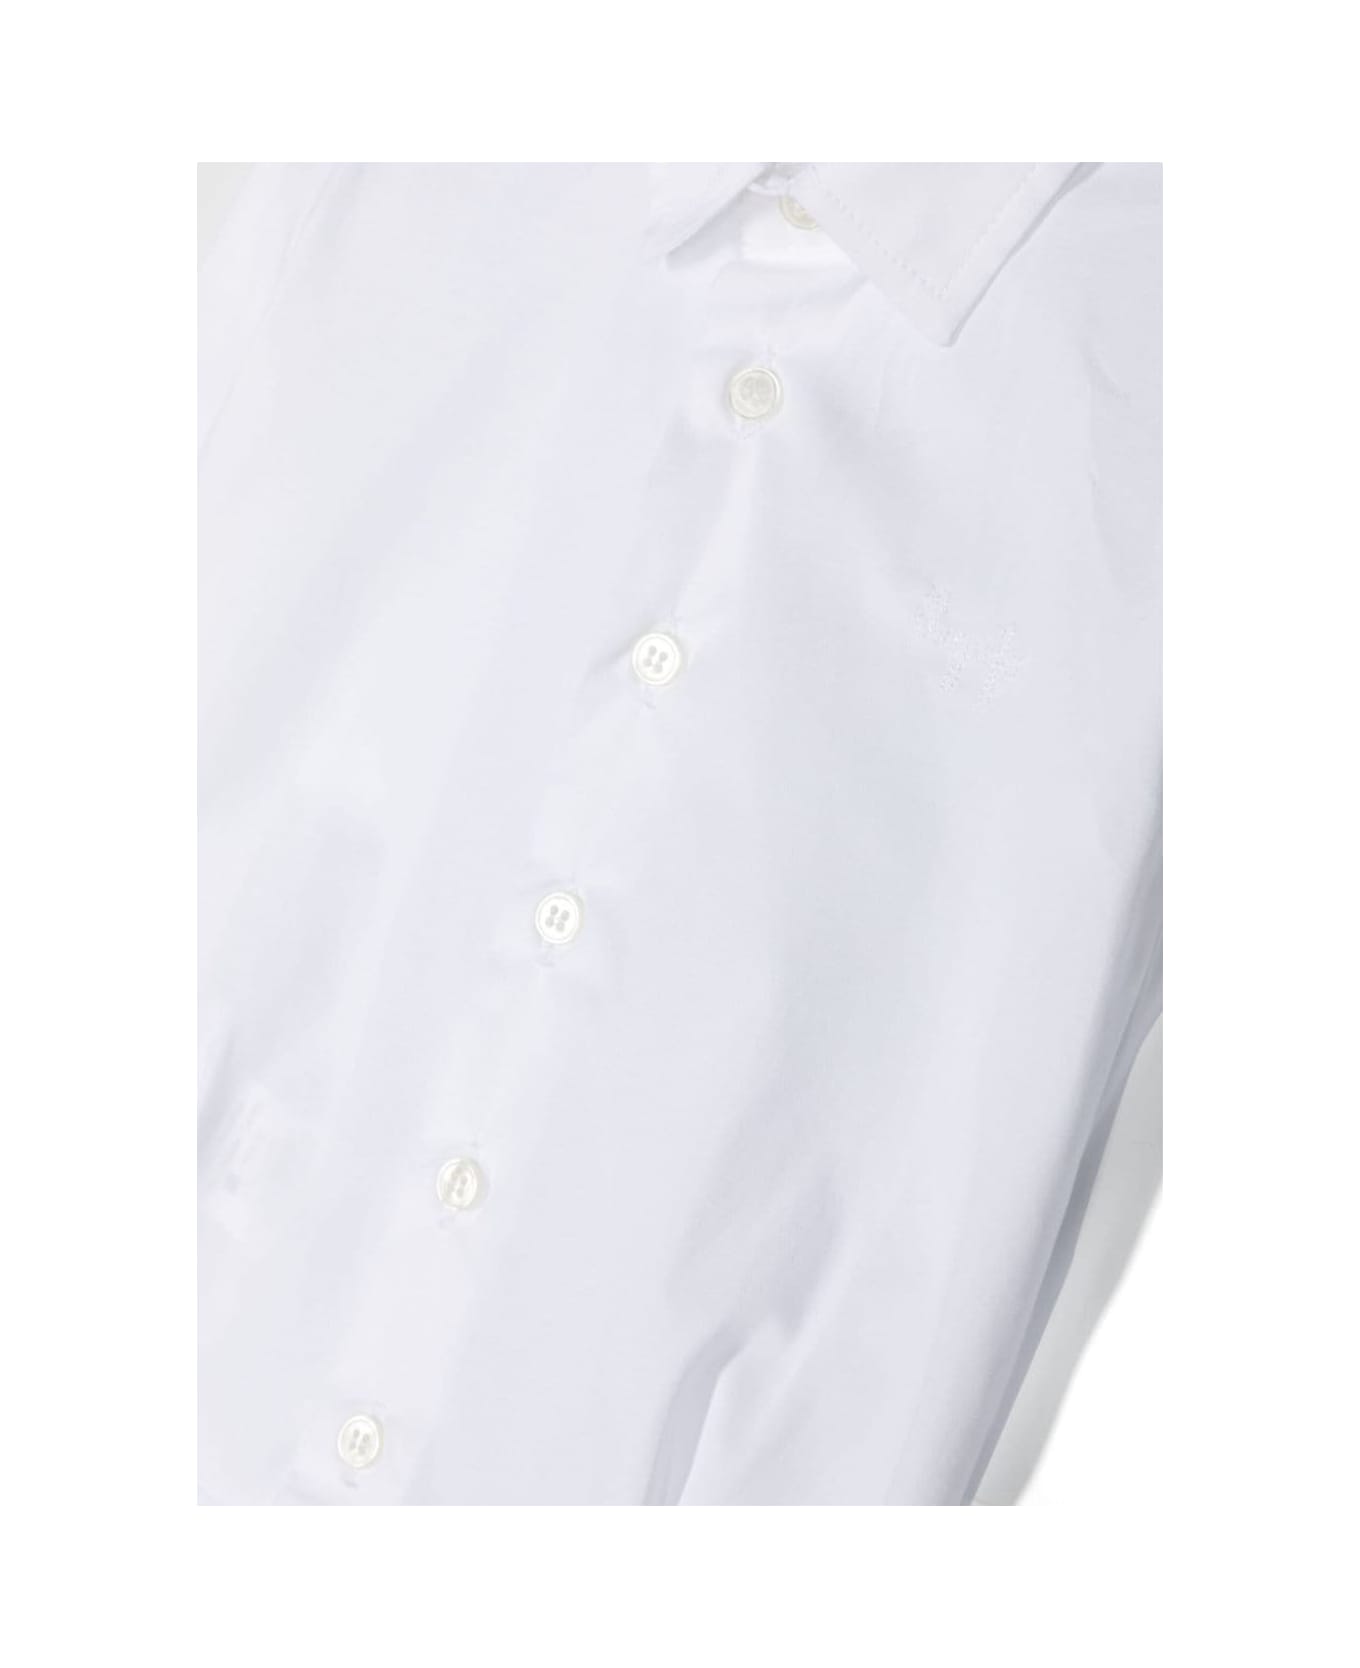 Il Gufo Body Camicia - White シャツ